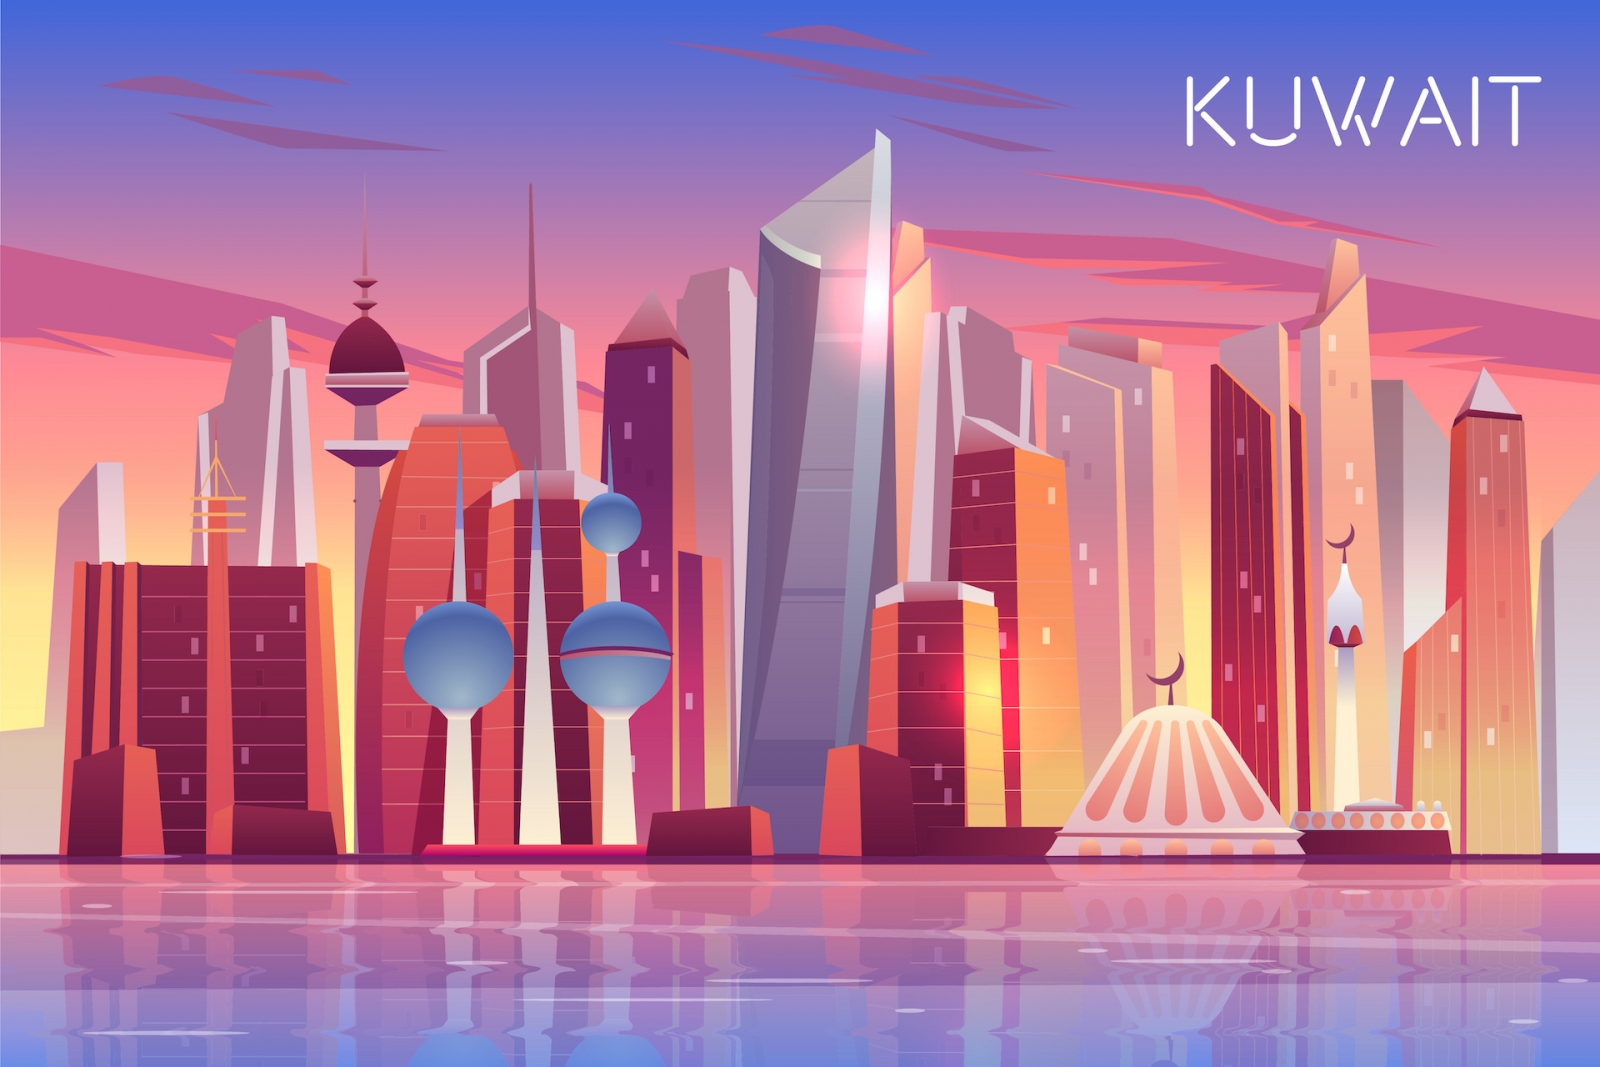 Horizonte de la ciudad de Kuwait.  Fondo panorámico del estado árabe moderno con rascacielos y torres en la bahía del Golfo Pérsico